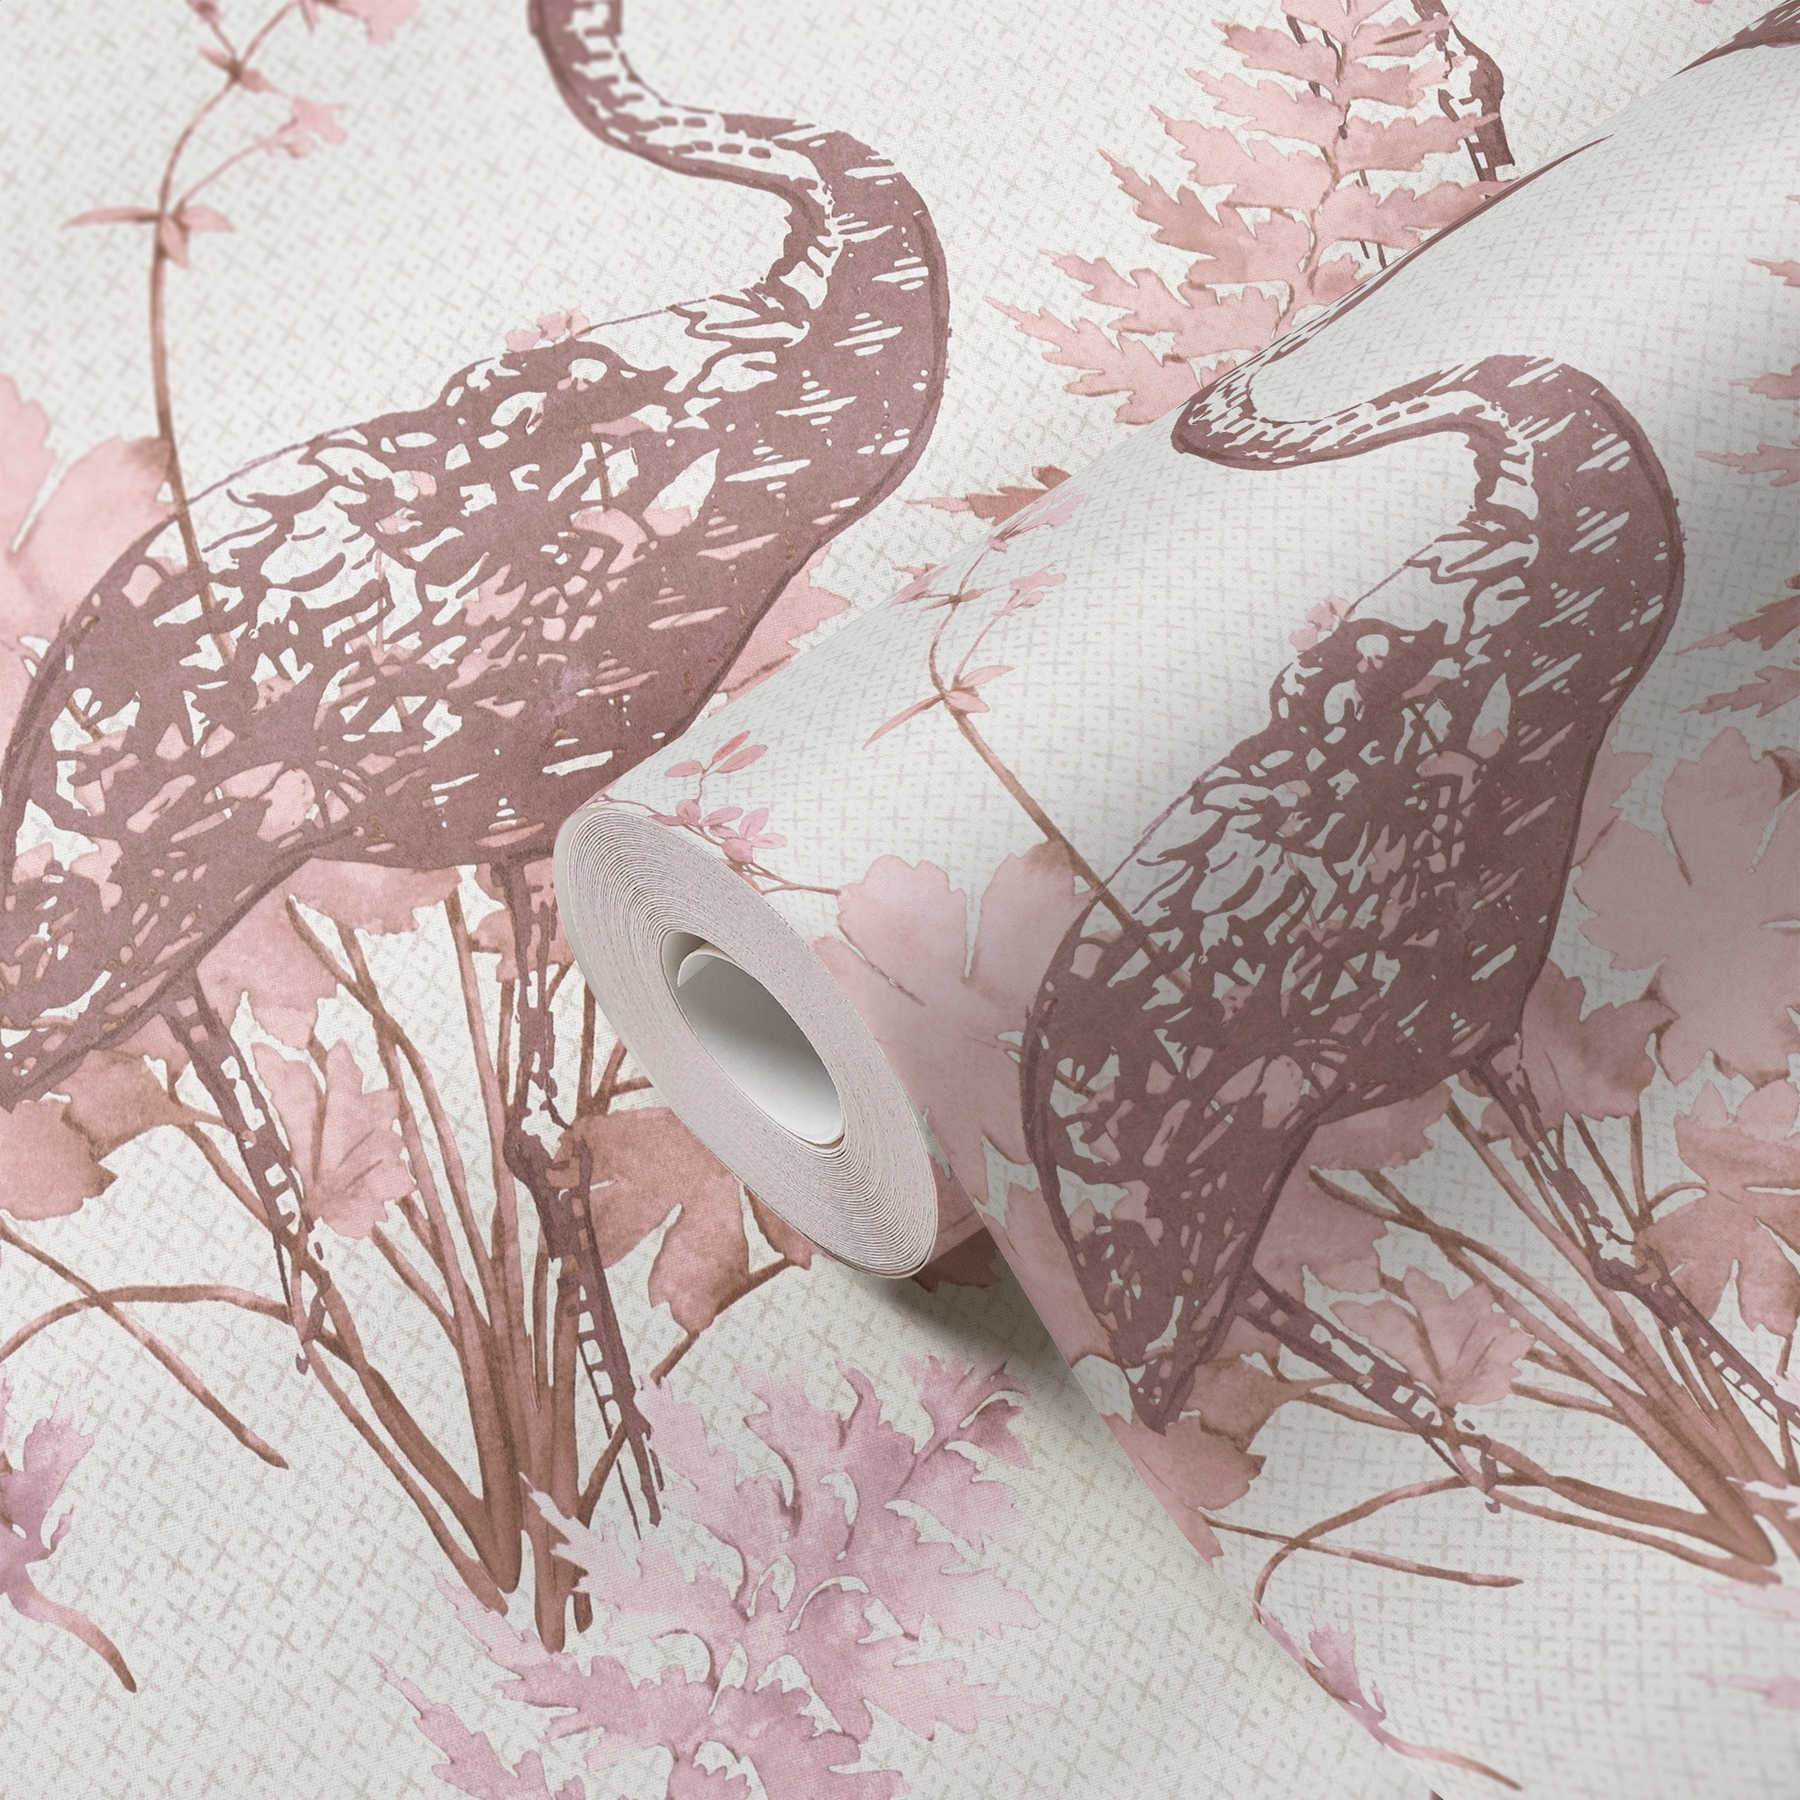             behang natuur vogels & bladeren in aquarelstijl - beige, roze
        